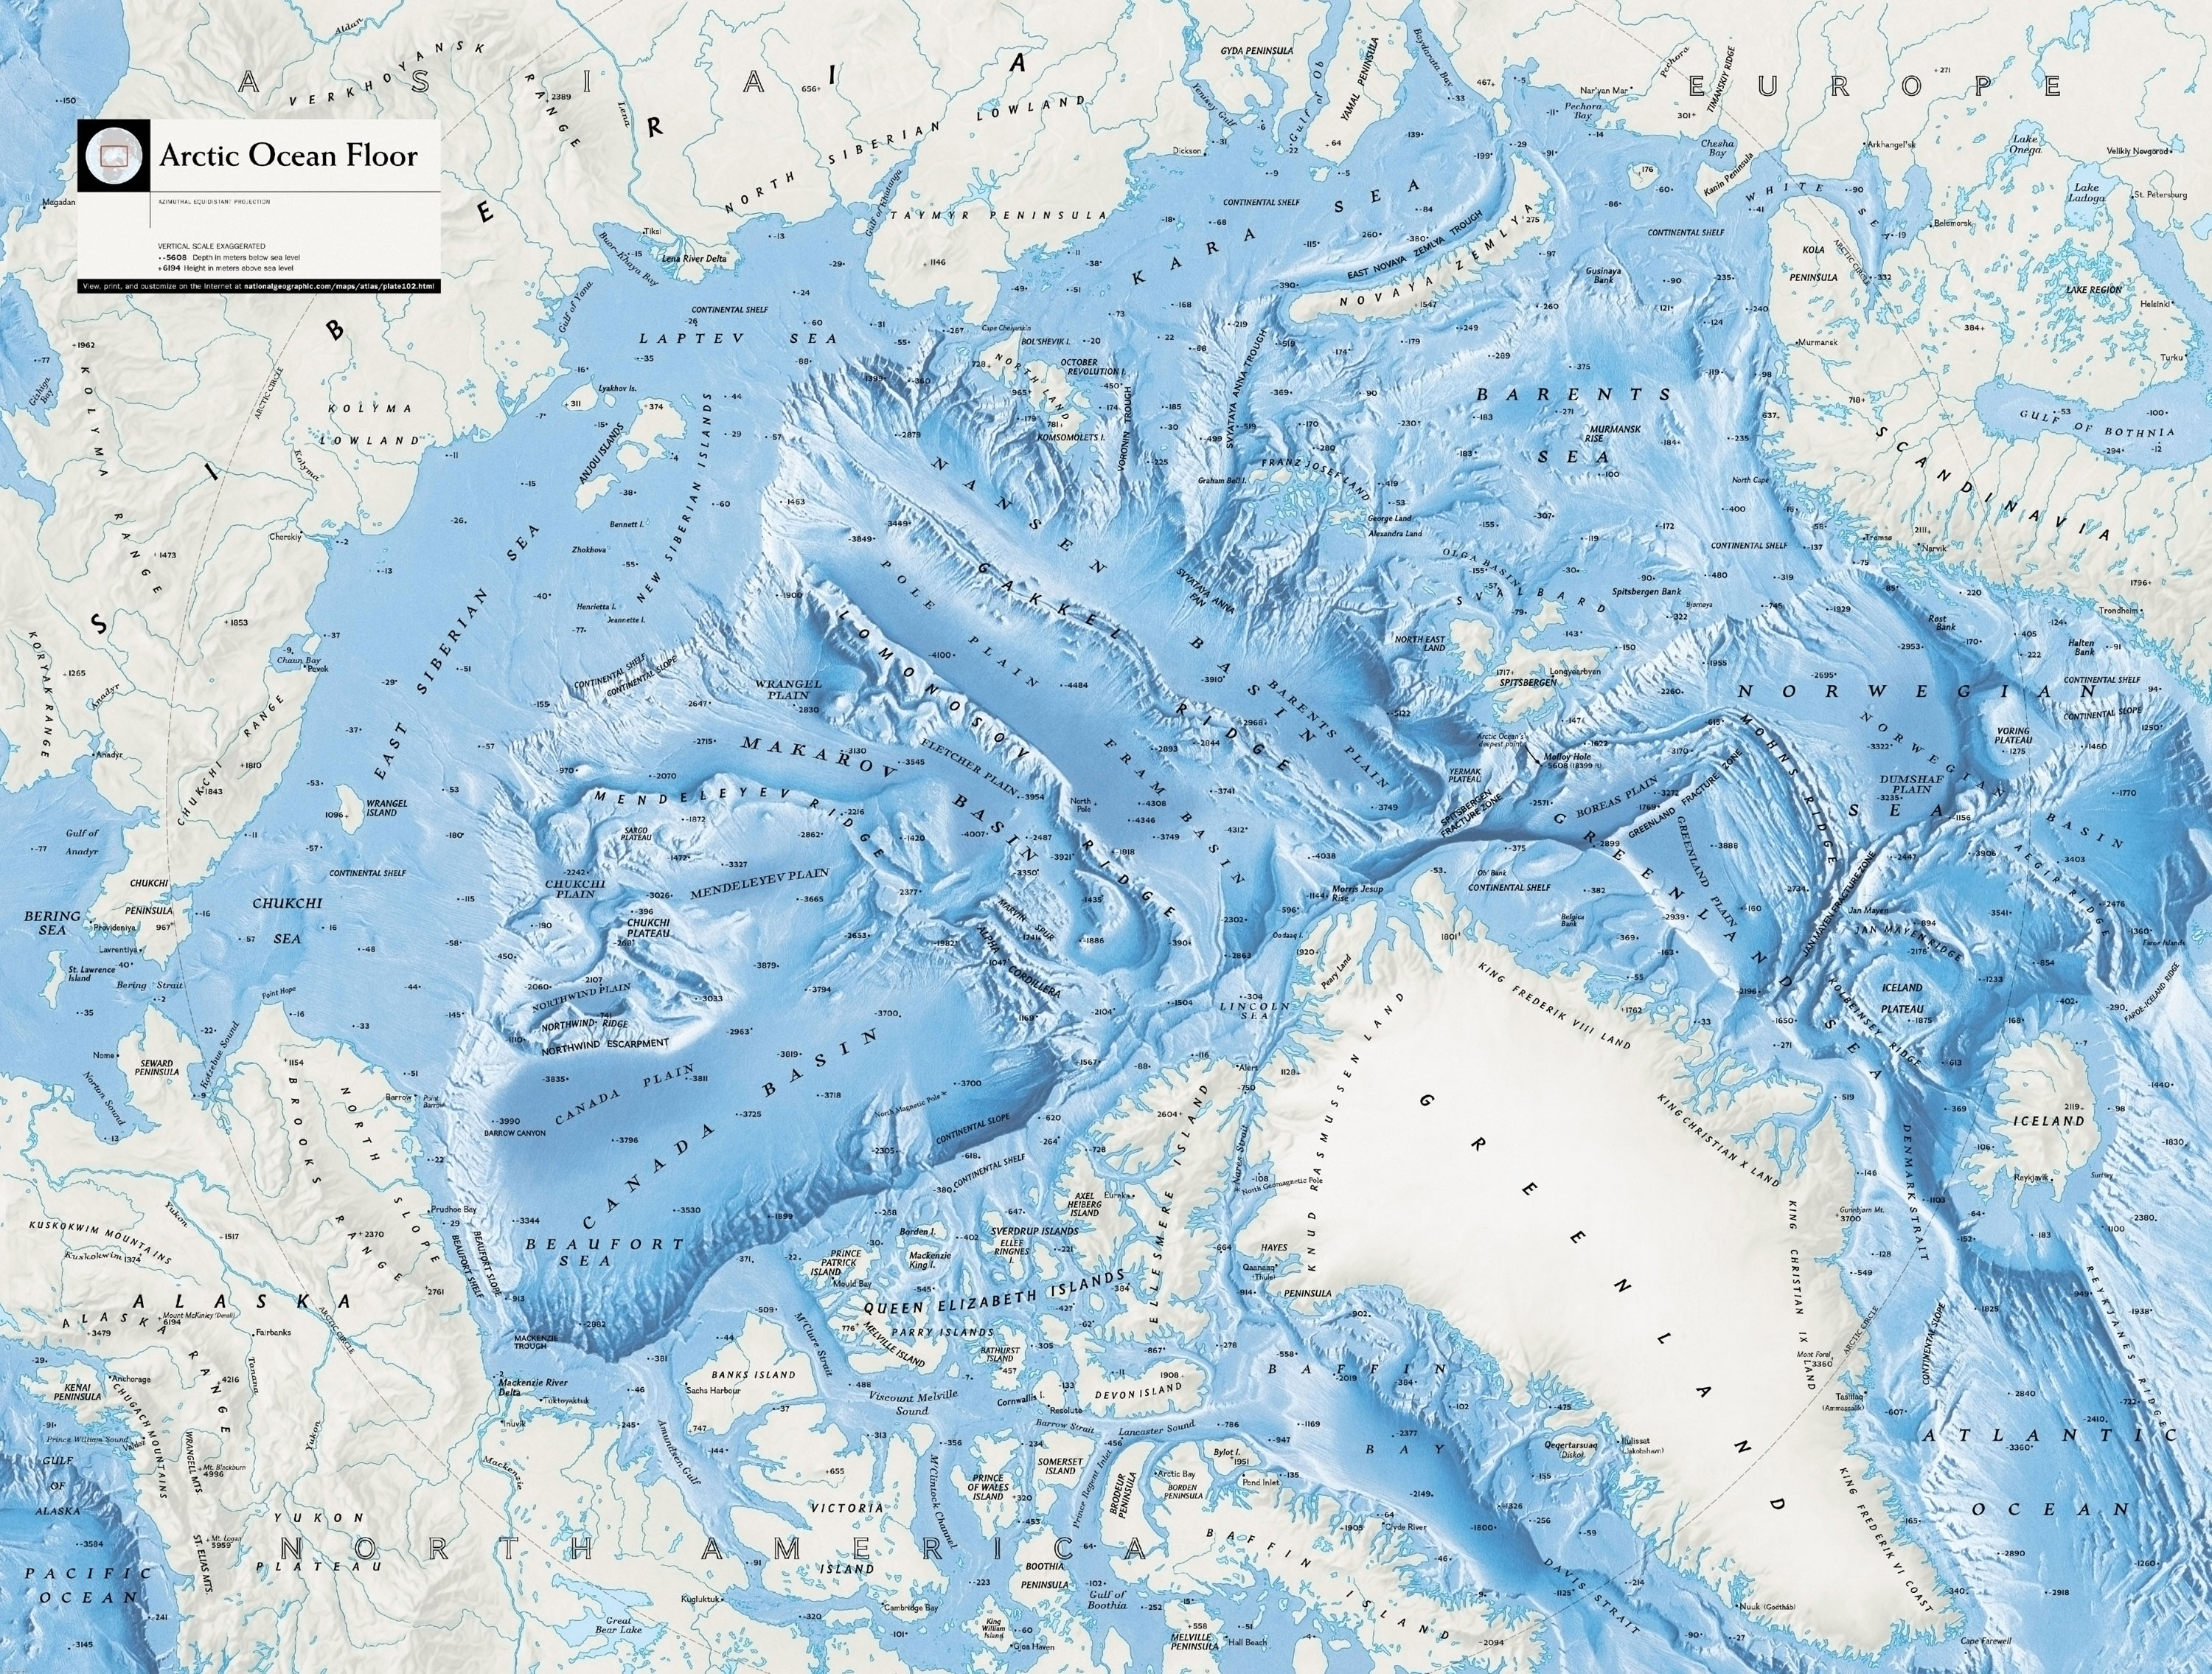 Бассейны мировых океанов. Рельеф дна Северного Ледовитого океана. Северный Ледовитый океан рельеф дна океана. Арктика Северный Ледовитый океан. Карта дна Северного Ледовитого океана.